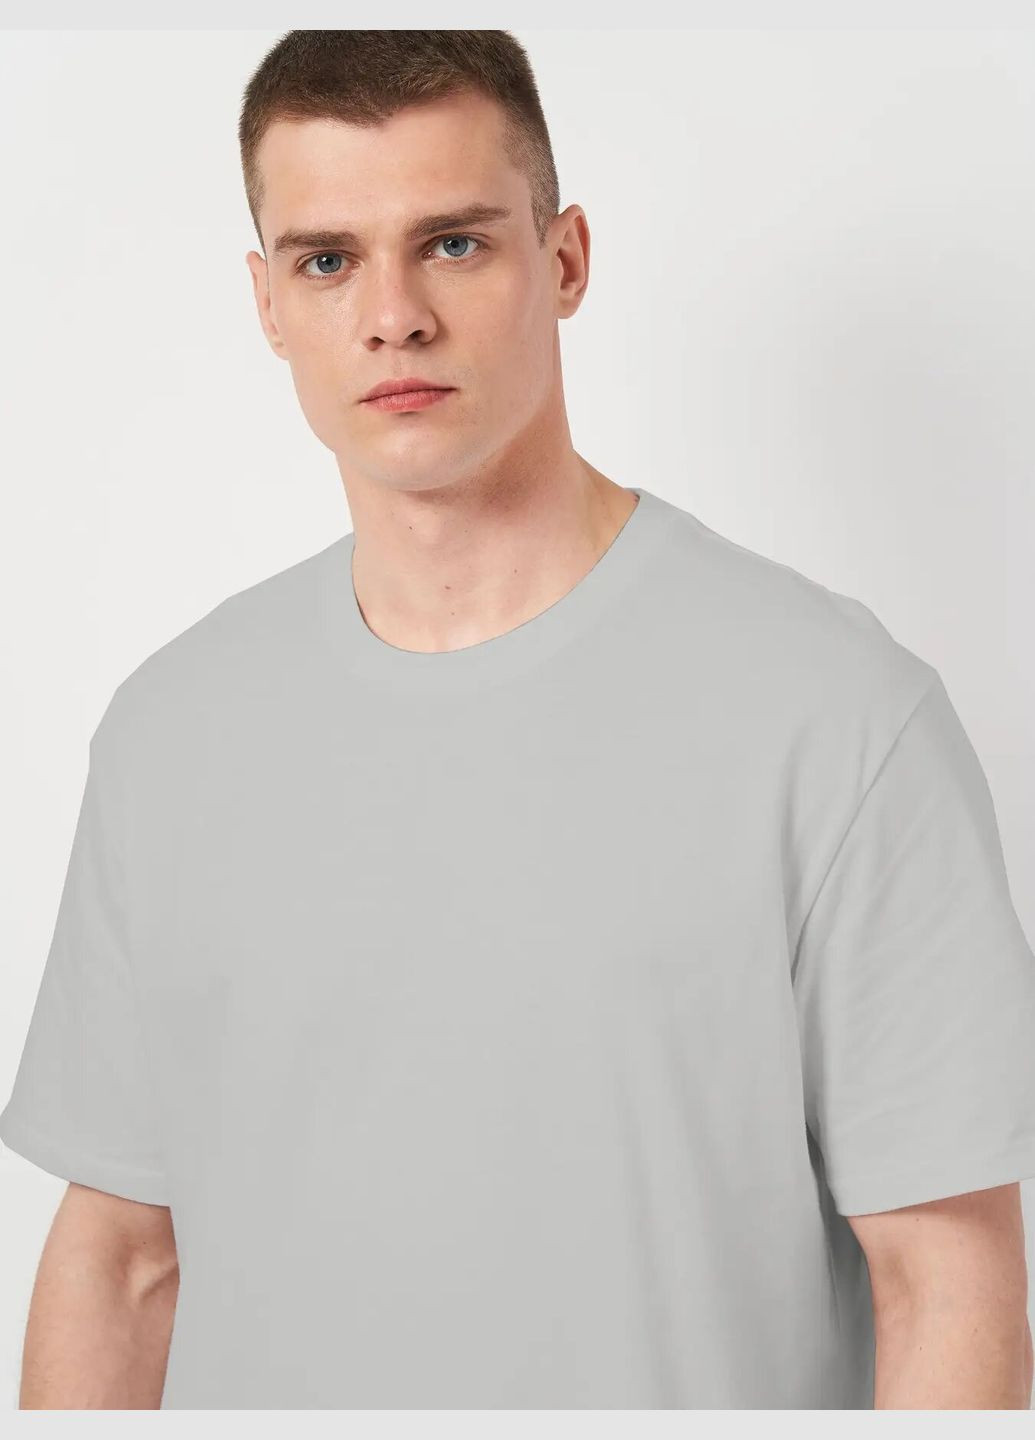 Светло-серая футболка мужская больших размеров с коротким рукавом Роза